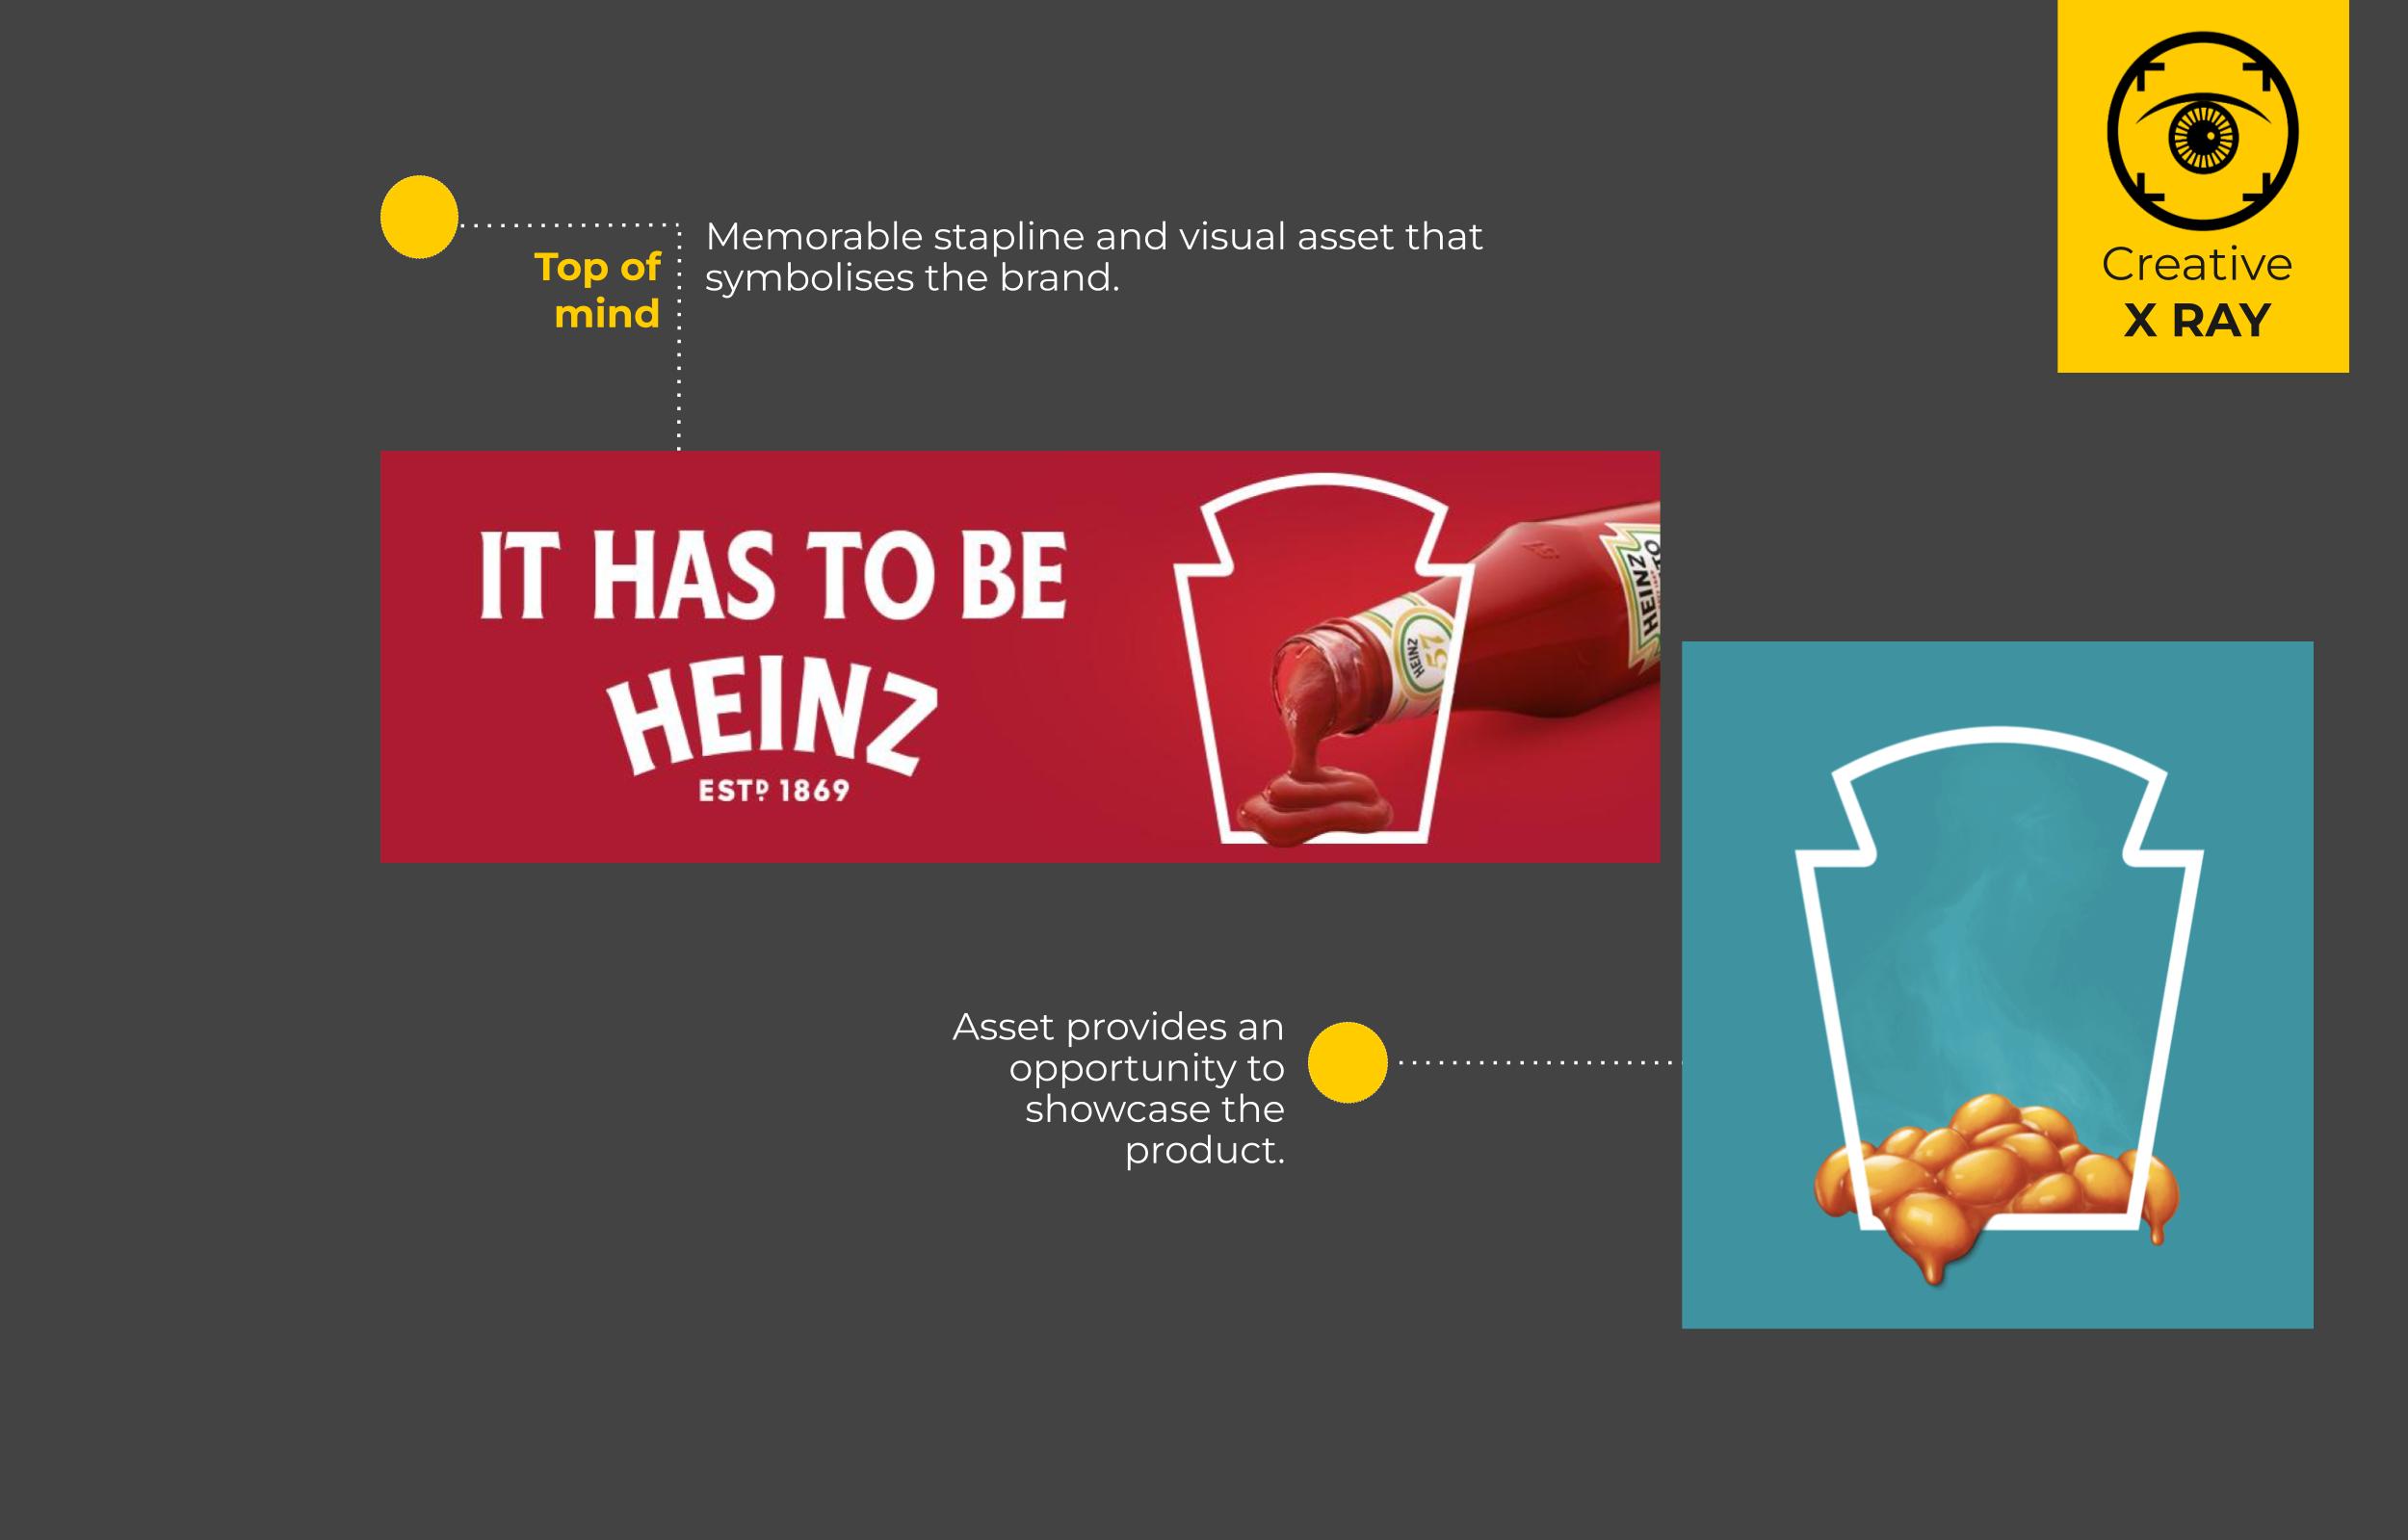 Heinz. Top of mind.